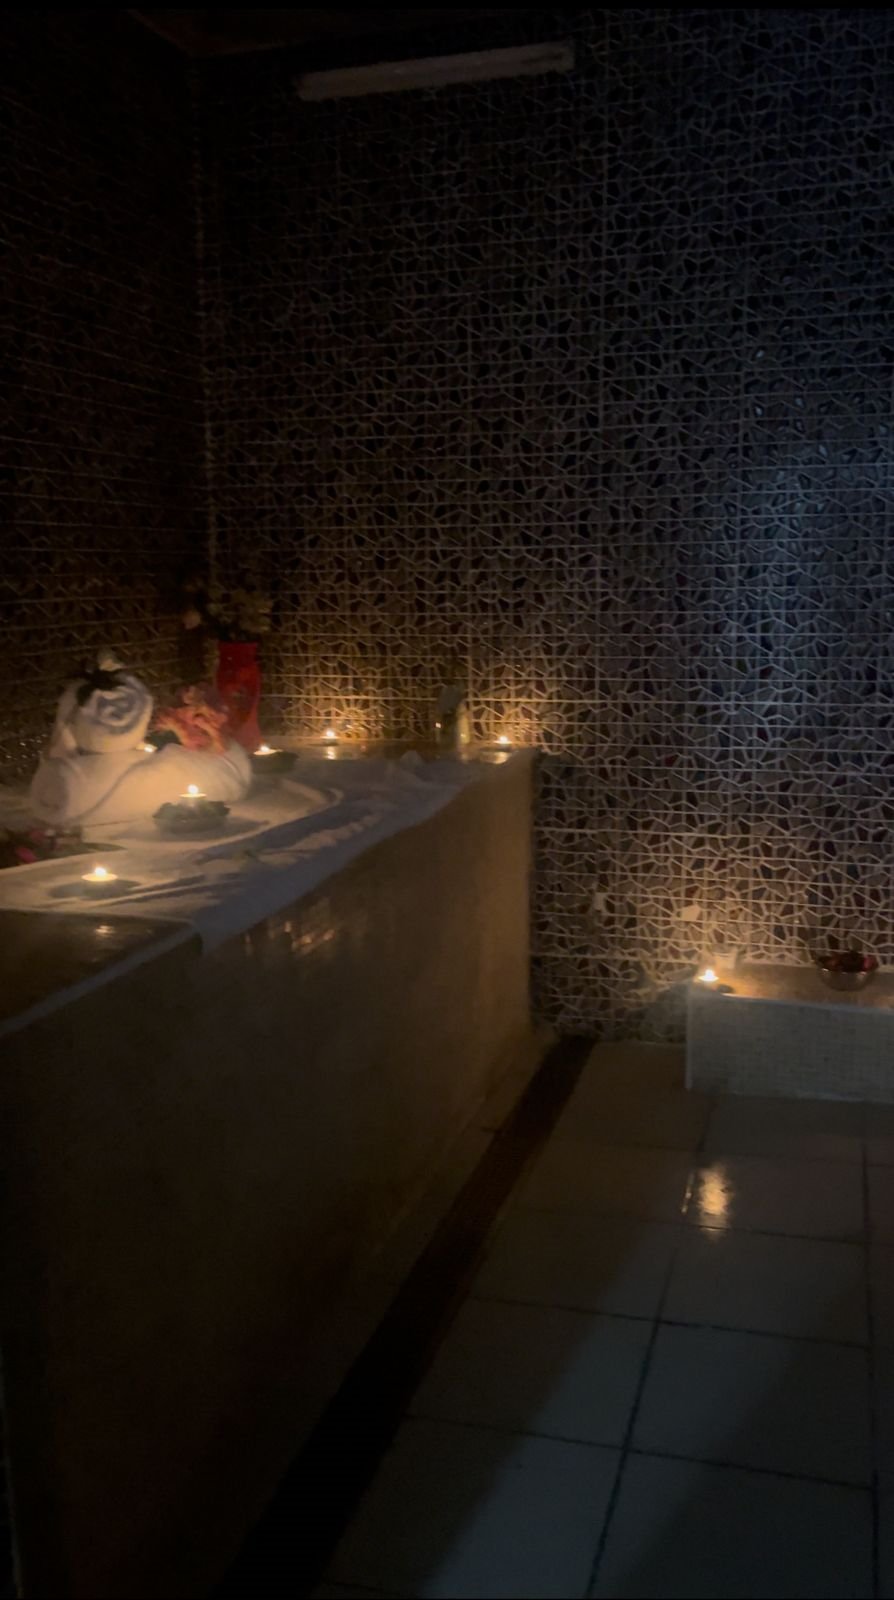 Moroccan Bath in Qatar